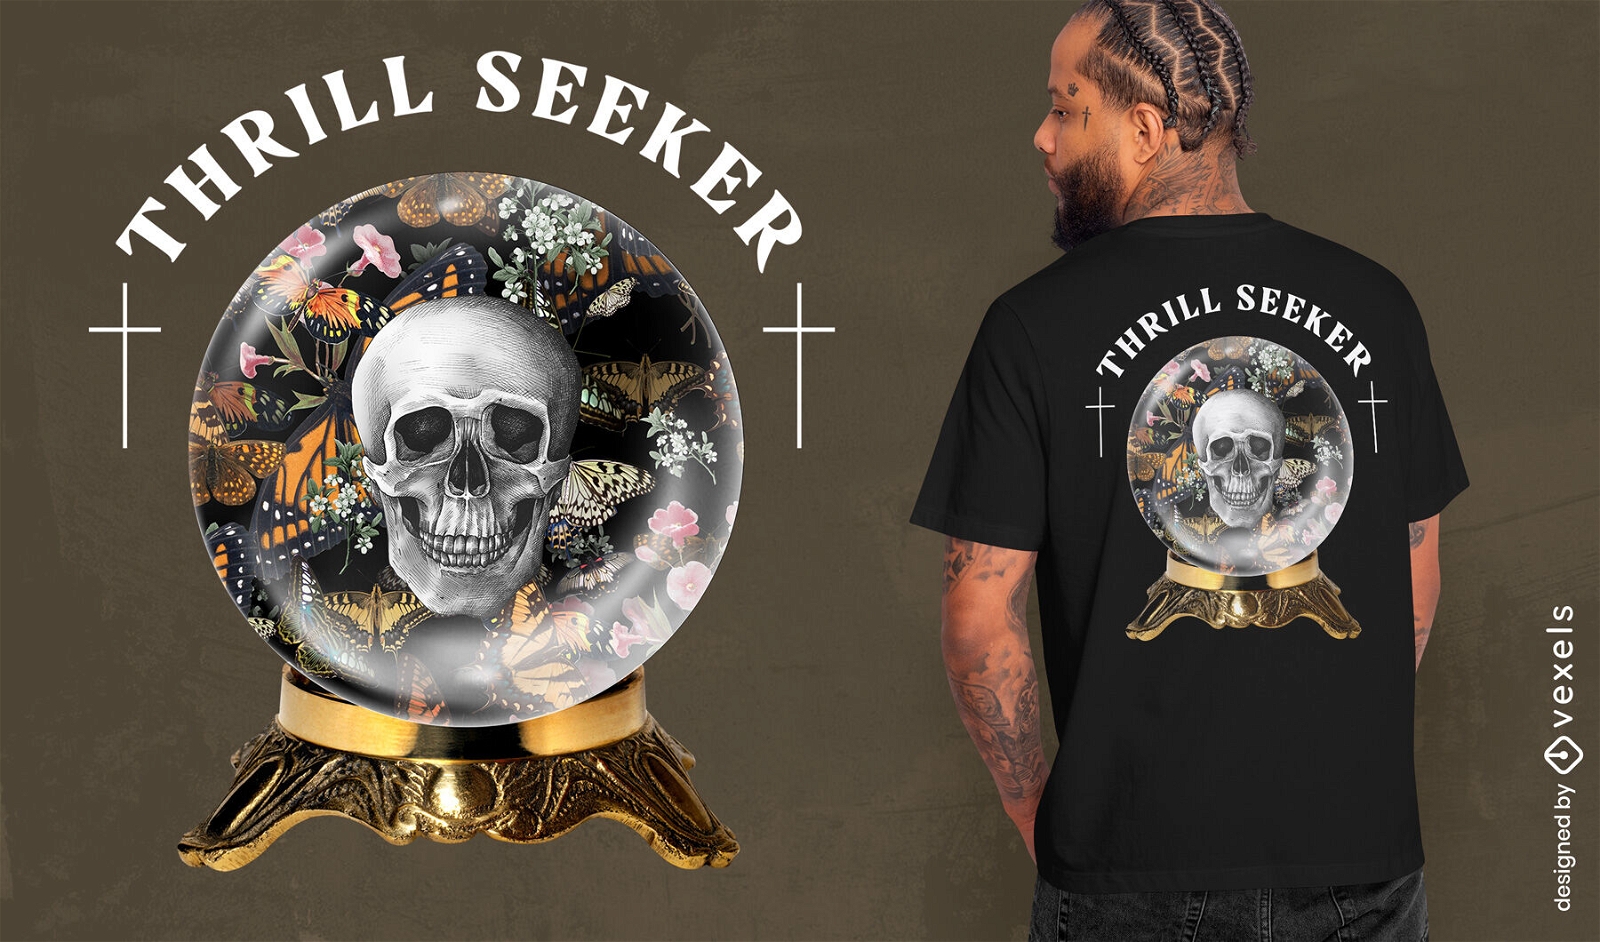 Crystal ball skull t-shirt design